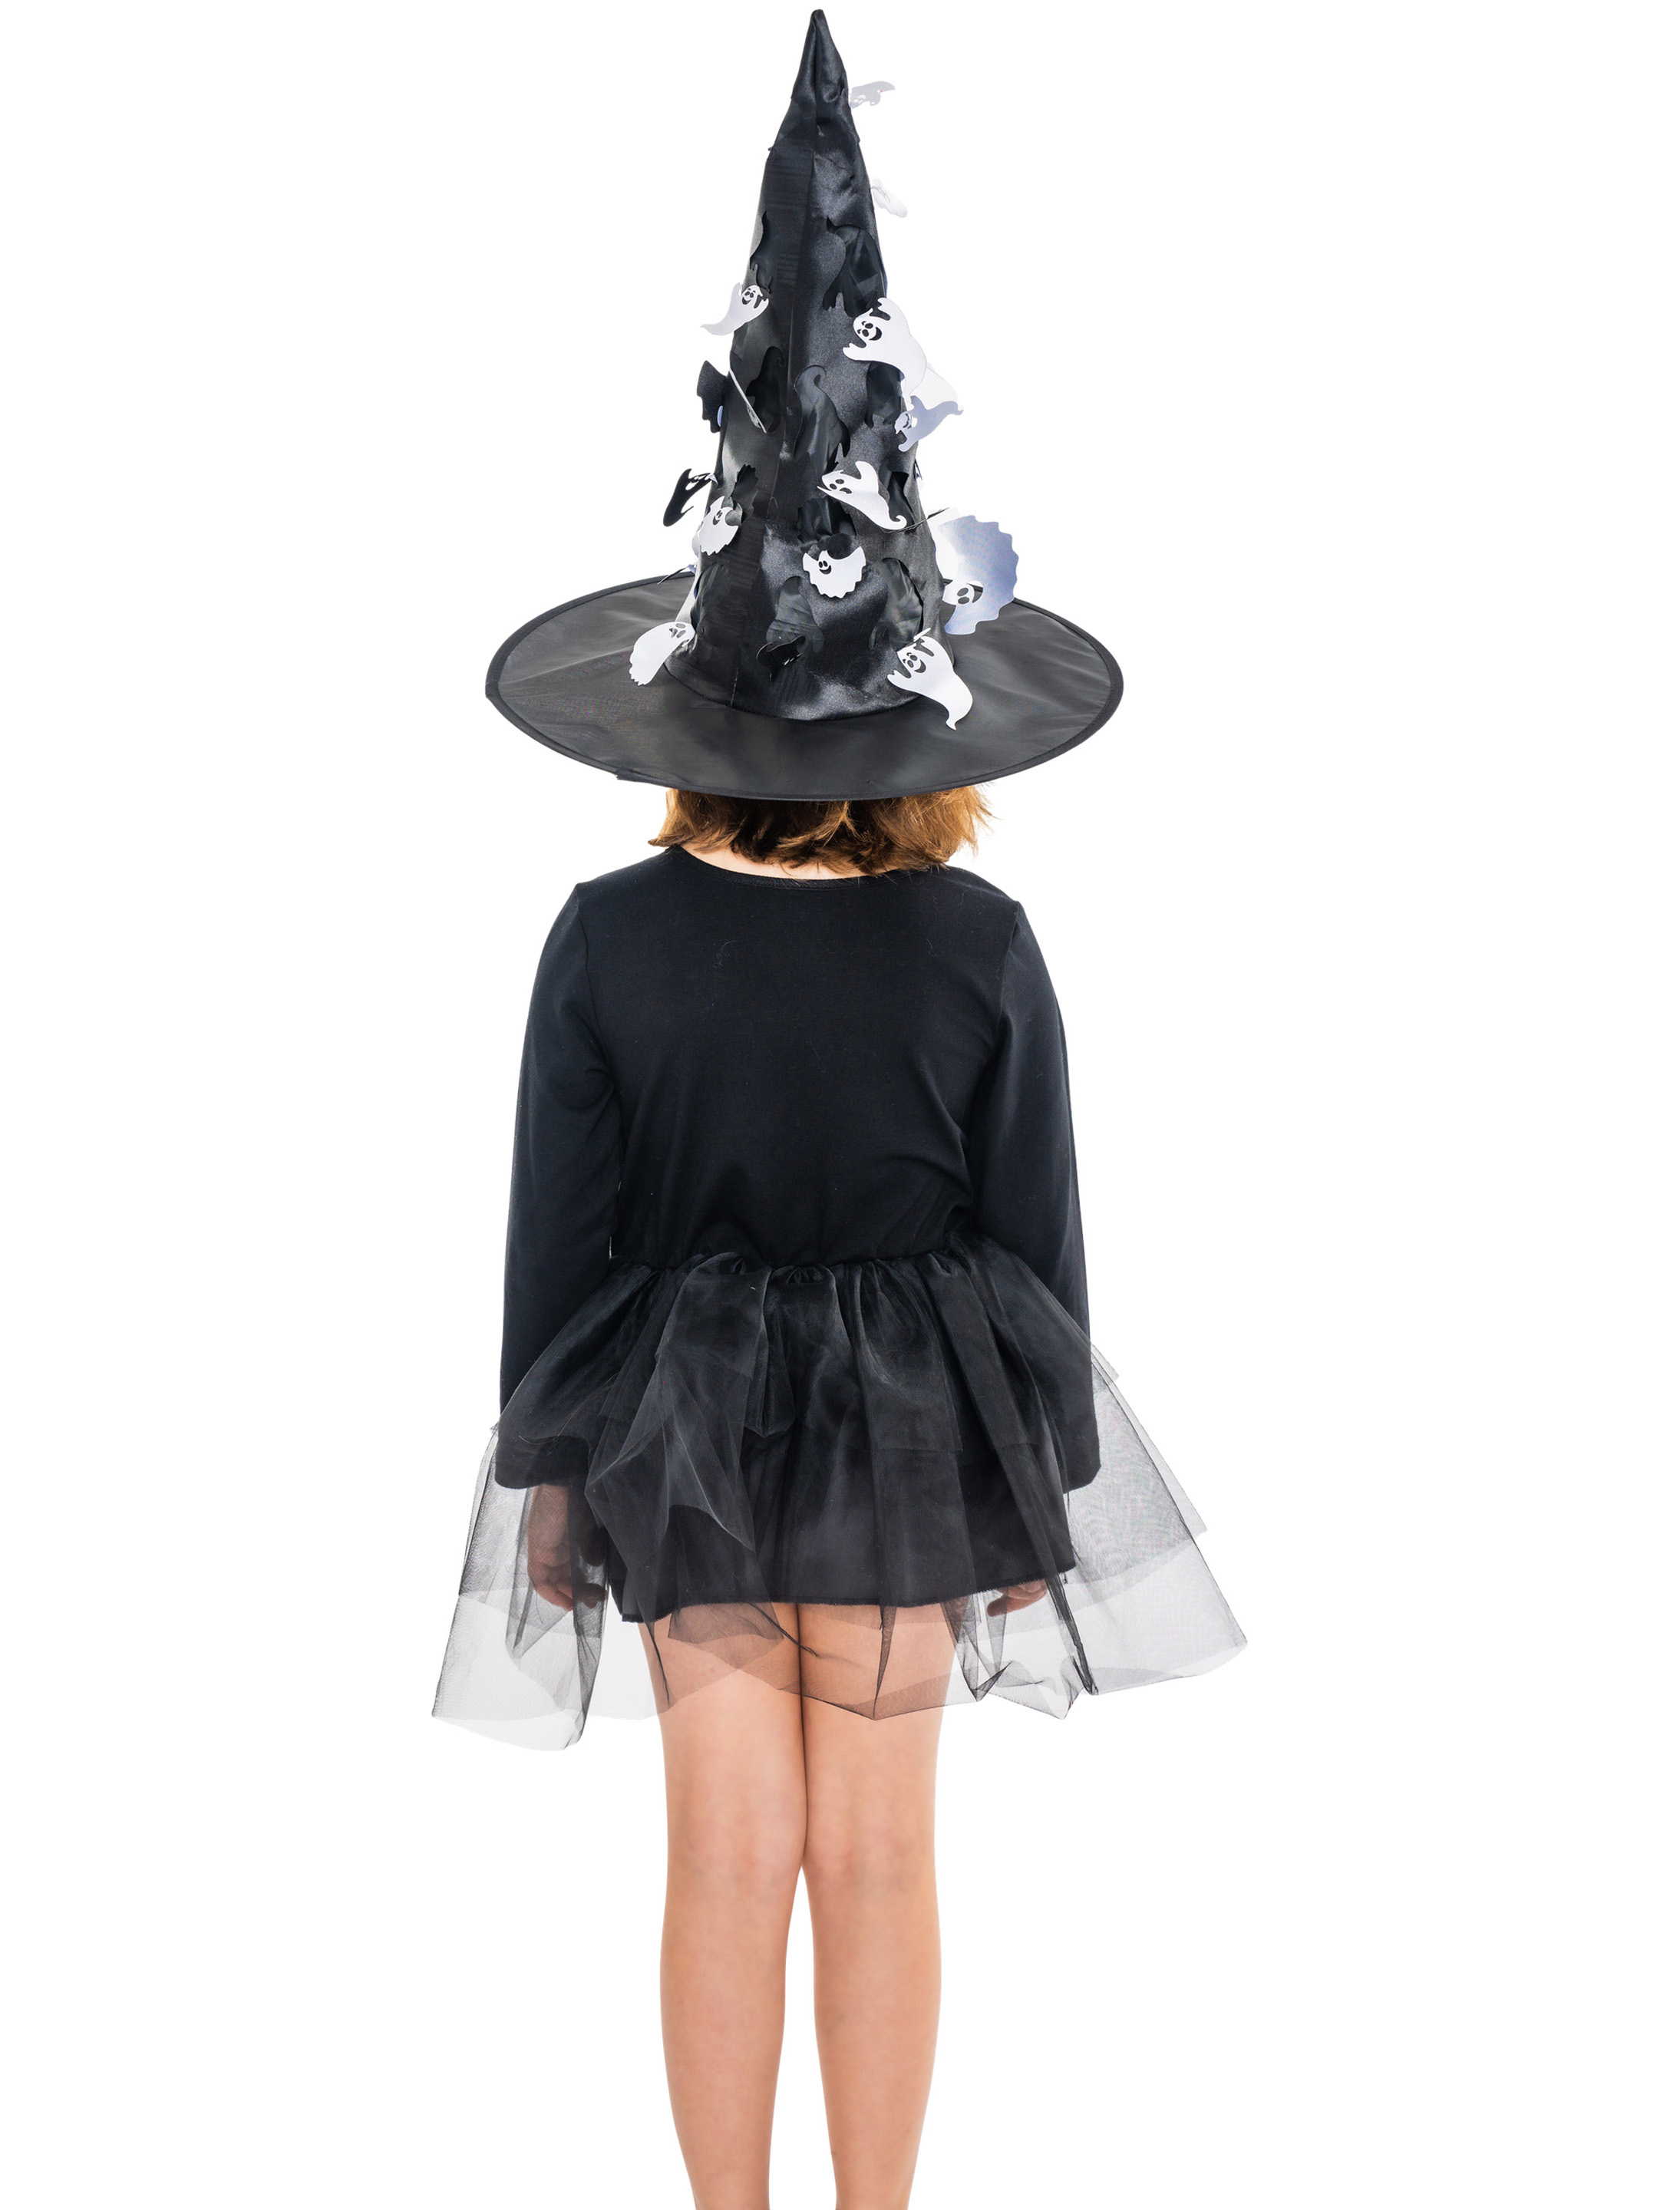 Kleid Hexe Kinder schwarz 104